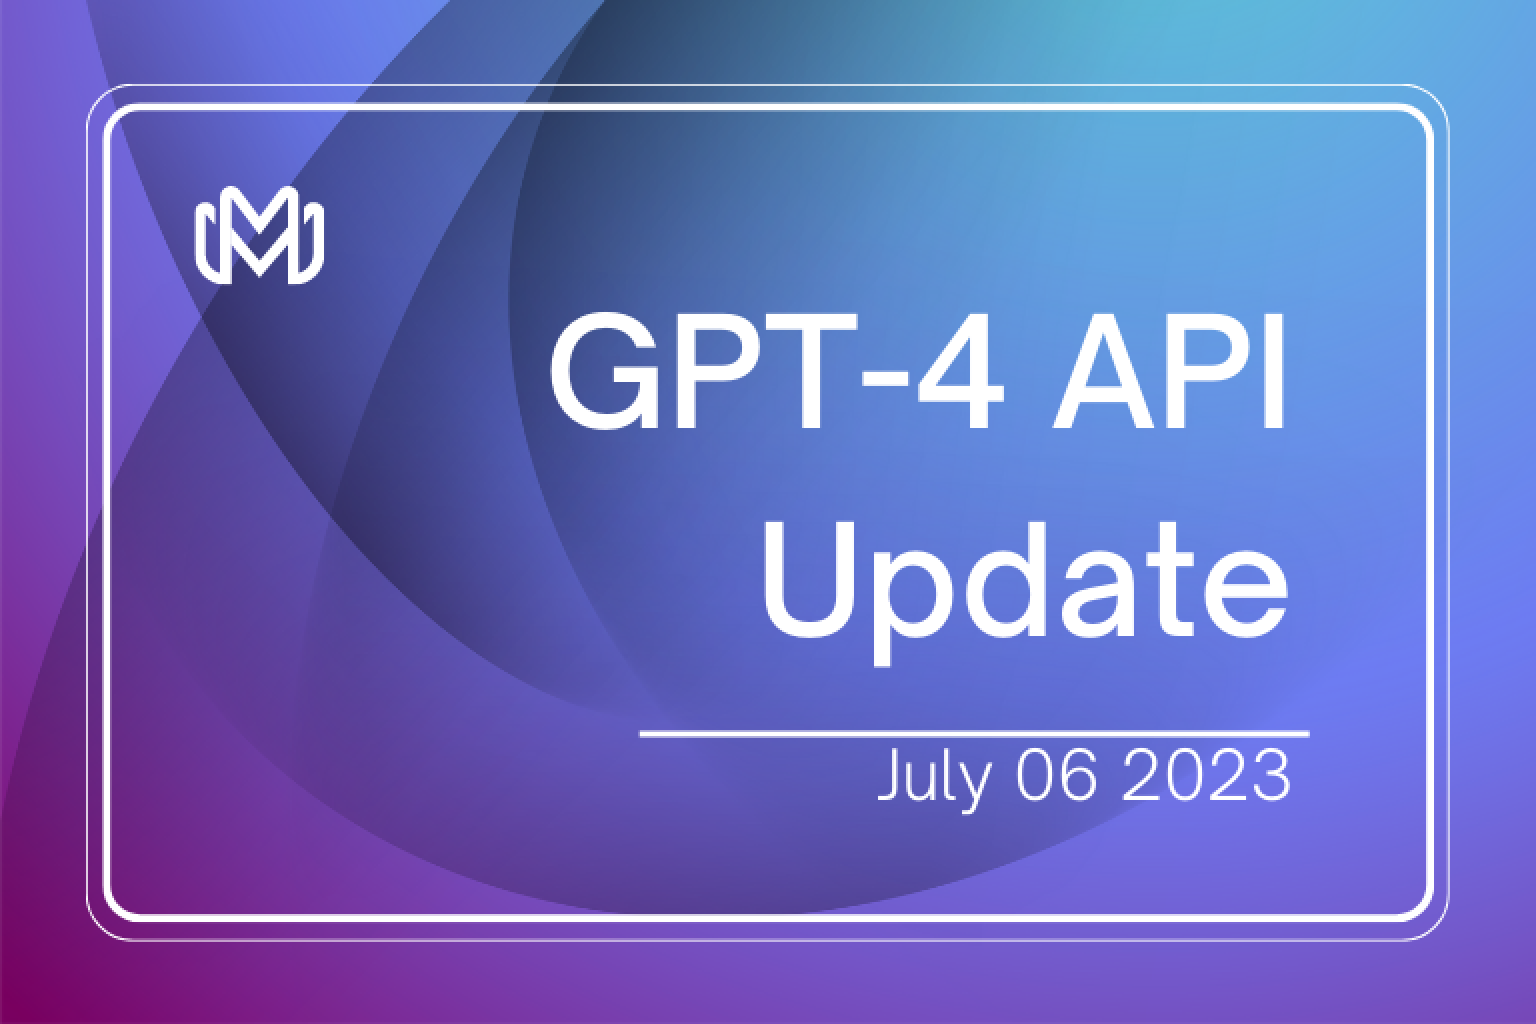 Découvrez les dernières mises à jour d'OpenAI. Explorez la disponibilité générale de l'API GPT-4, le passage collectif à l'API Chat Completions et le révolutionnaire interpréteur de code ChatGPT - autant d'éléments destinés à redéfinir le développement basé sur l'IA.